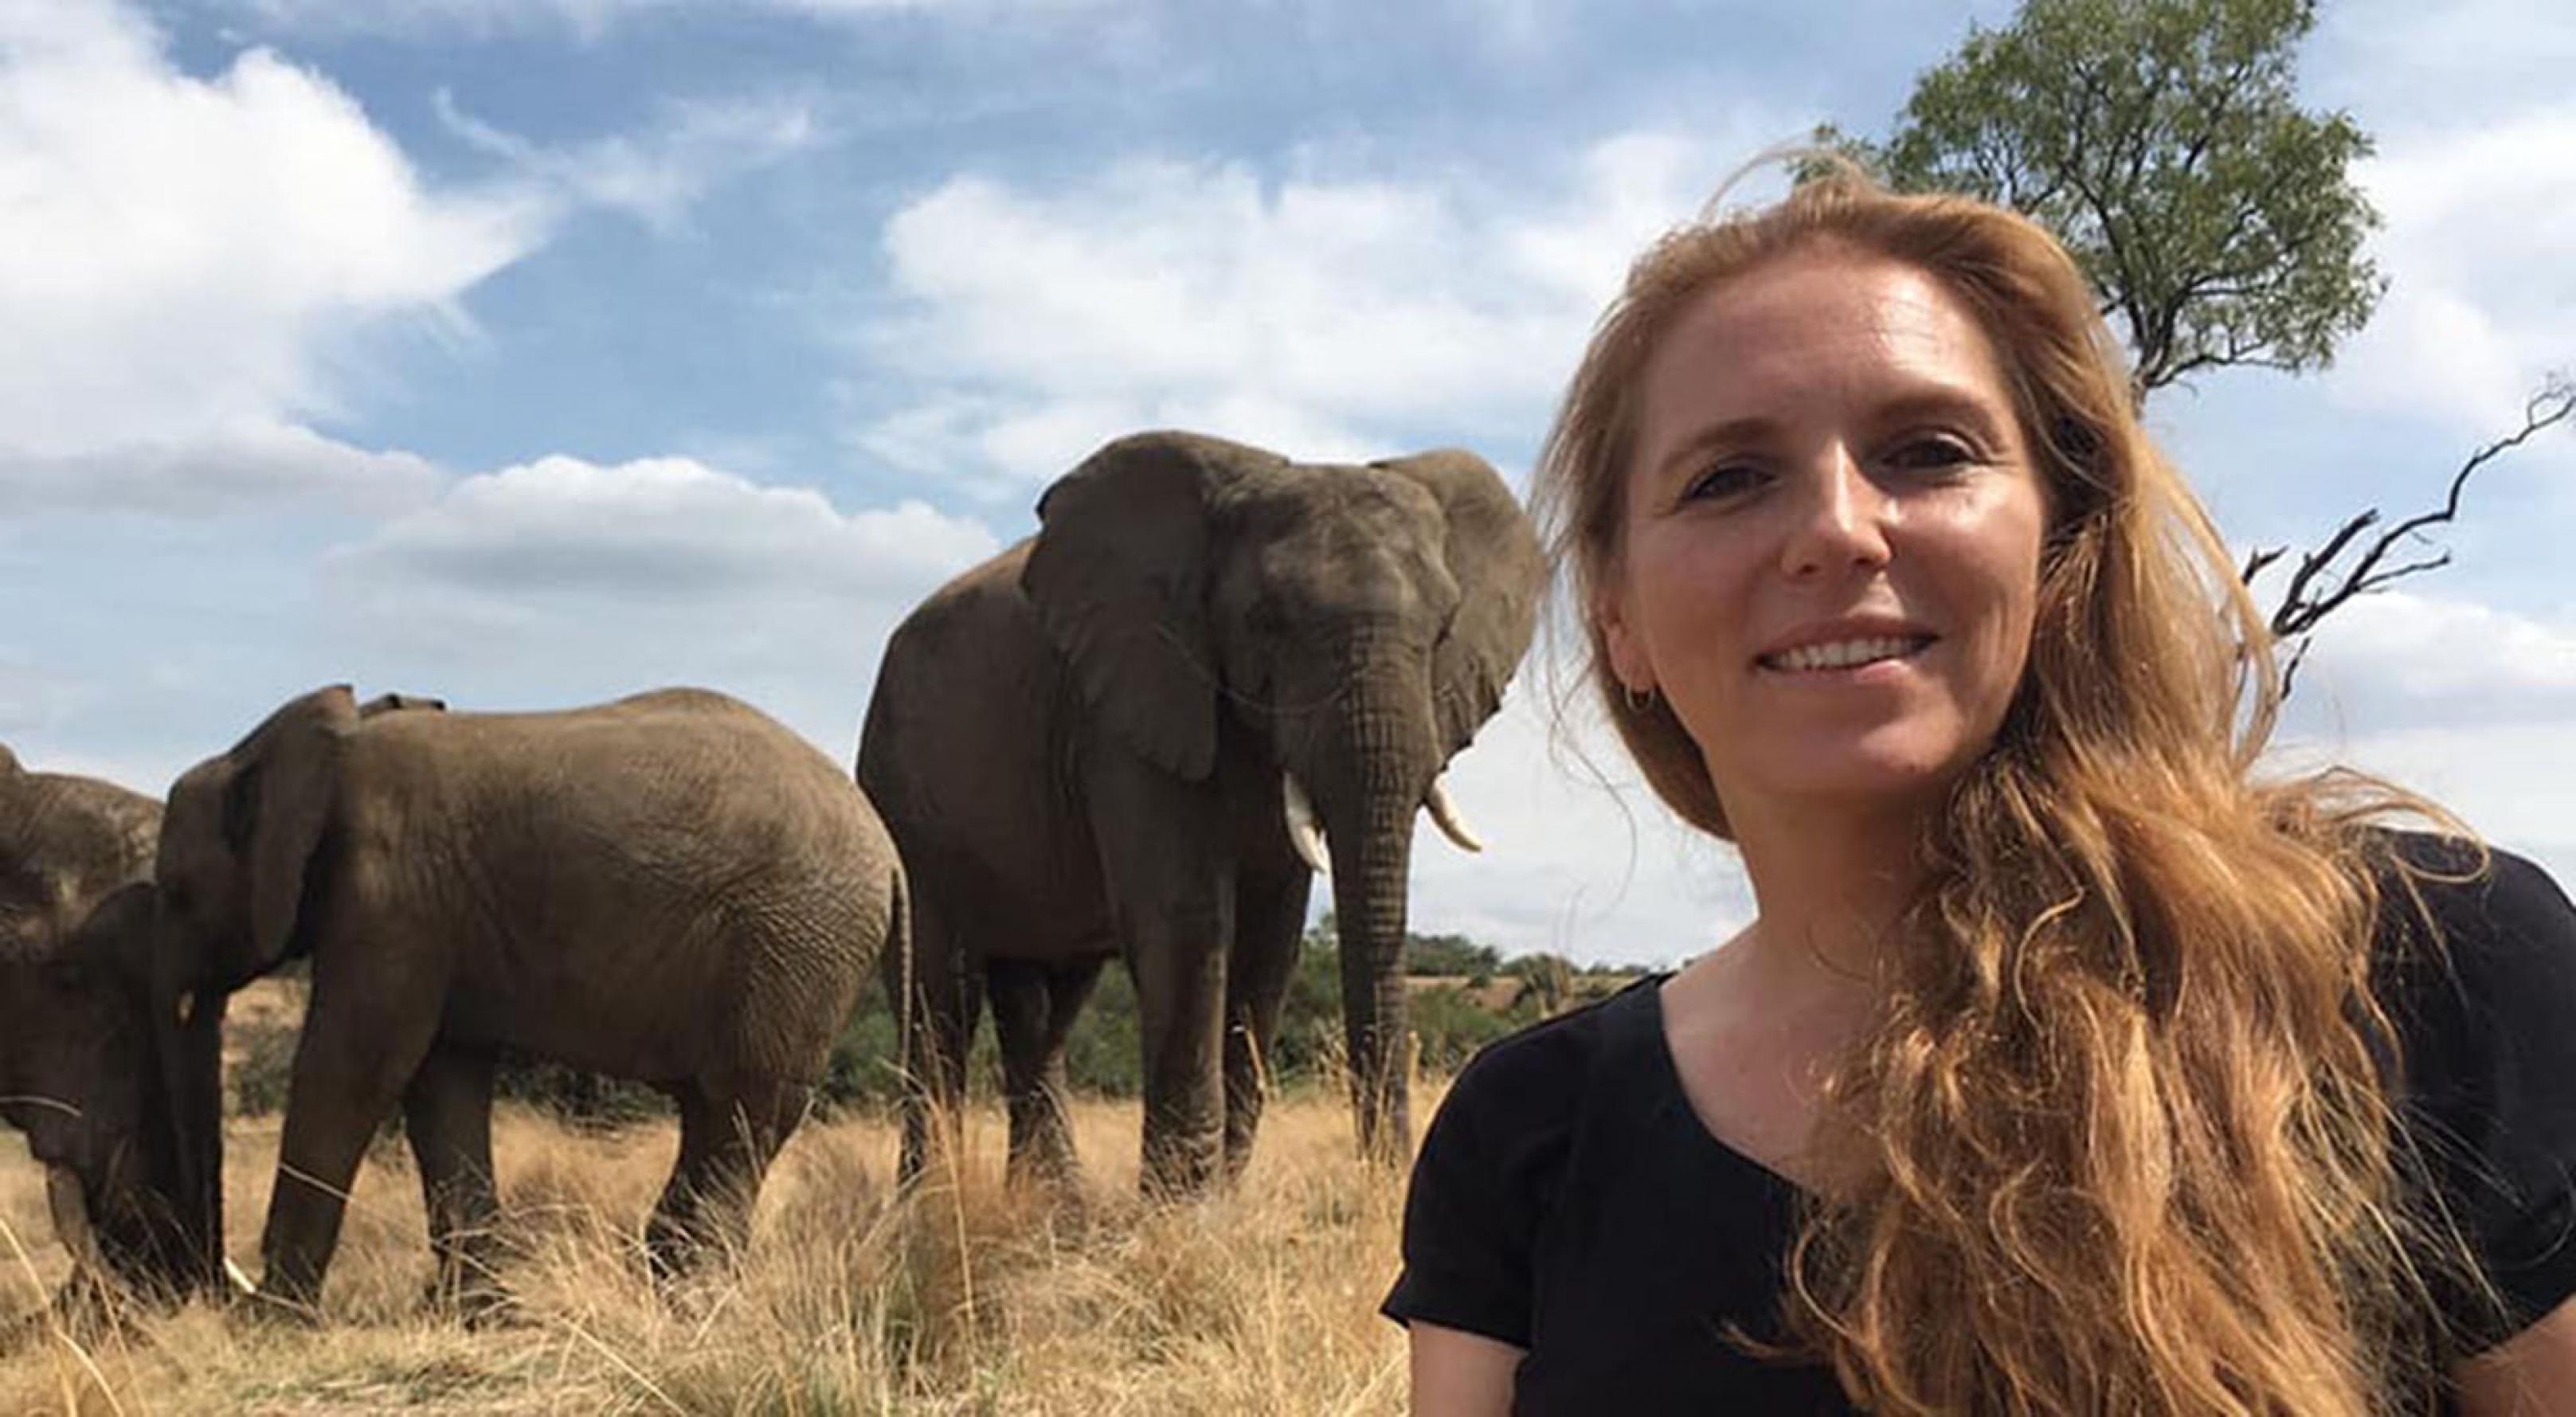 Die Wiener Zoologin Angela Stöger-Horwath leitet das „Mammal Communication Lab“ der Universität Wien. Sie hat sich auf die Kommunikation von Elefanten spezialisiert. Auf dem Bild ist sie vor Elefanten zu sehen.